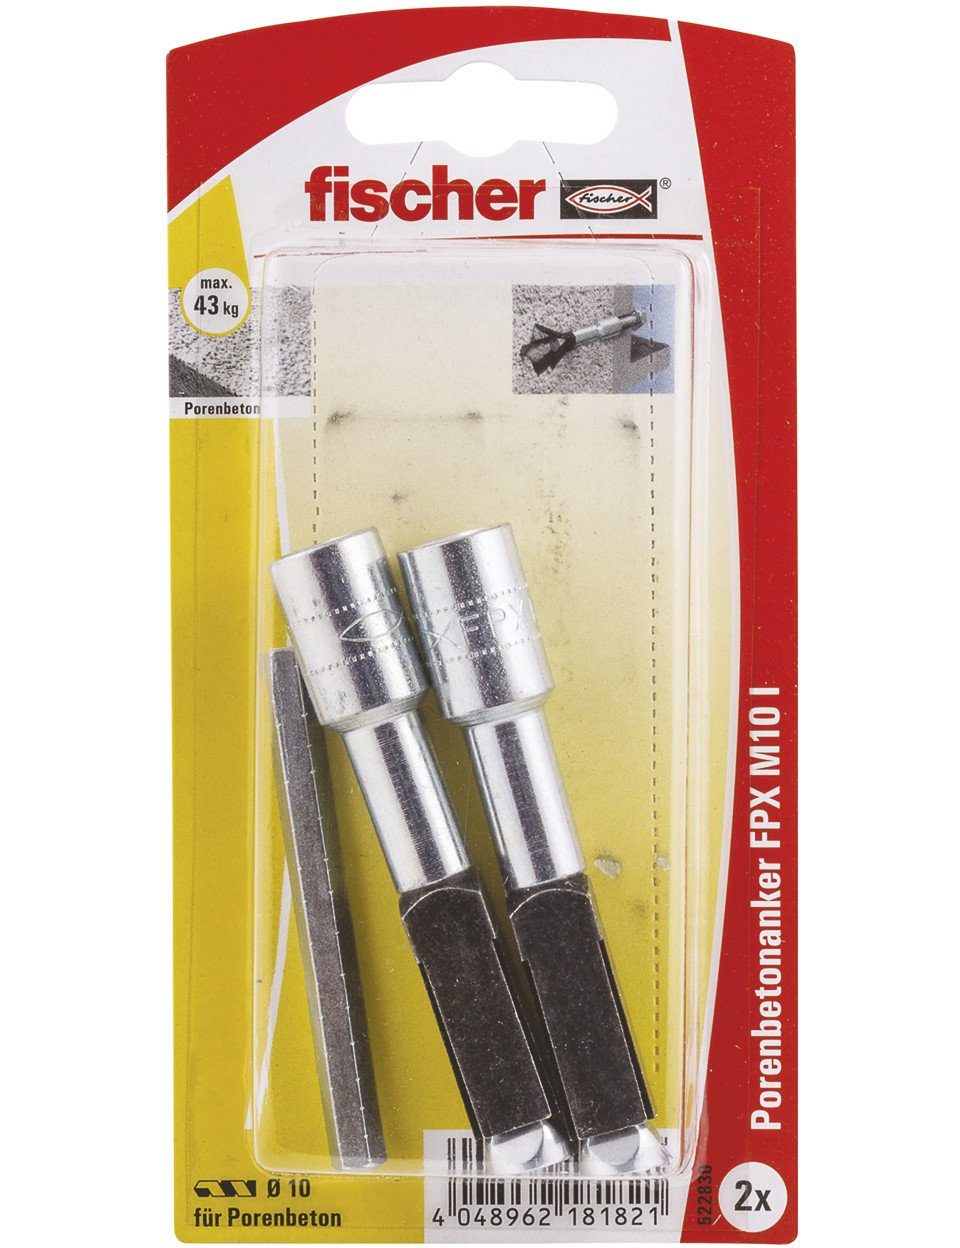 Porenbetonanker Dübel-Set mm 10.0 FPX und x Schrauben- fischer 2 - 75 Stück Fischer